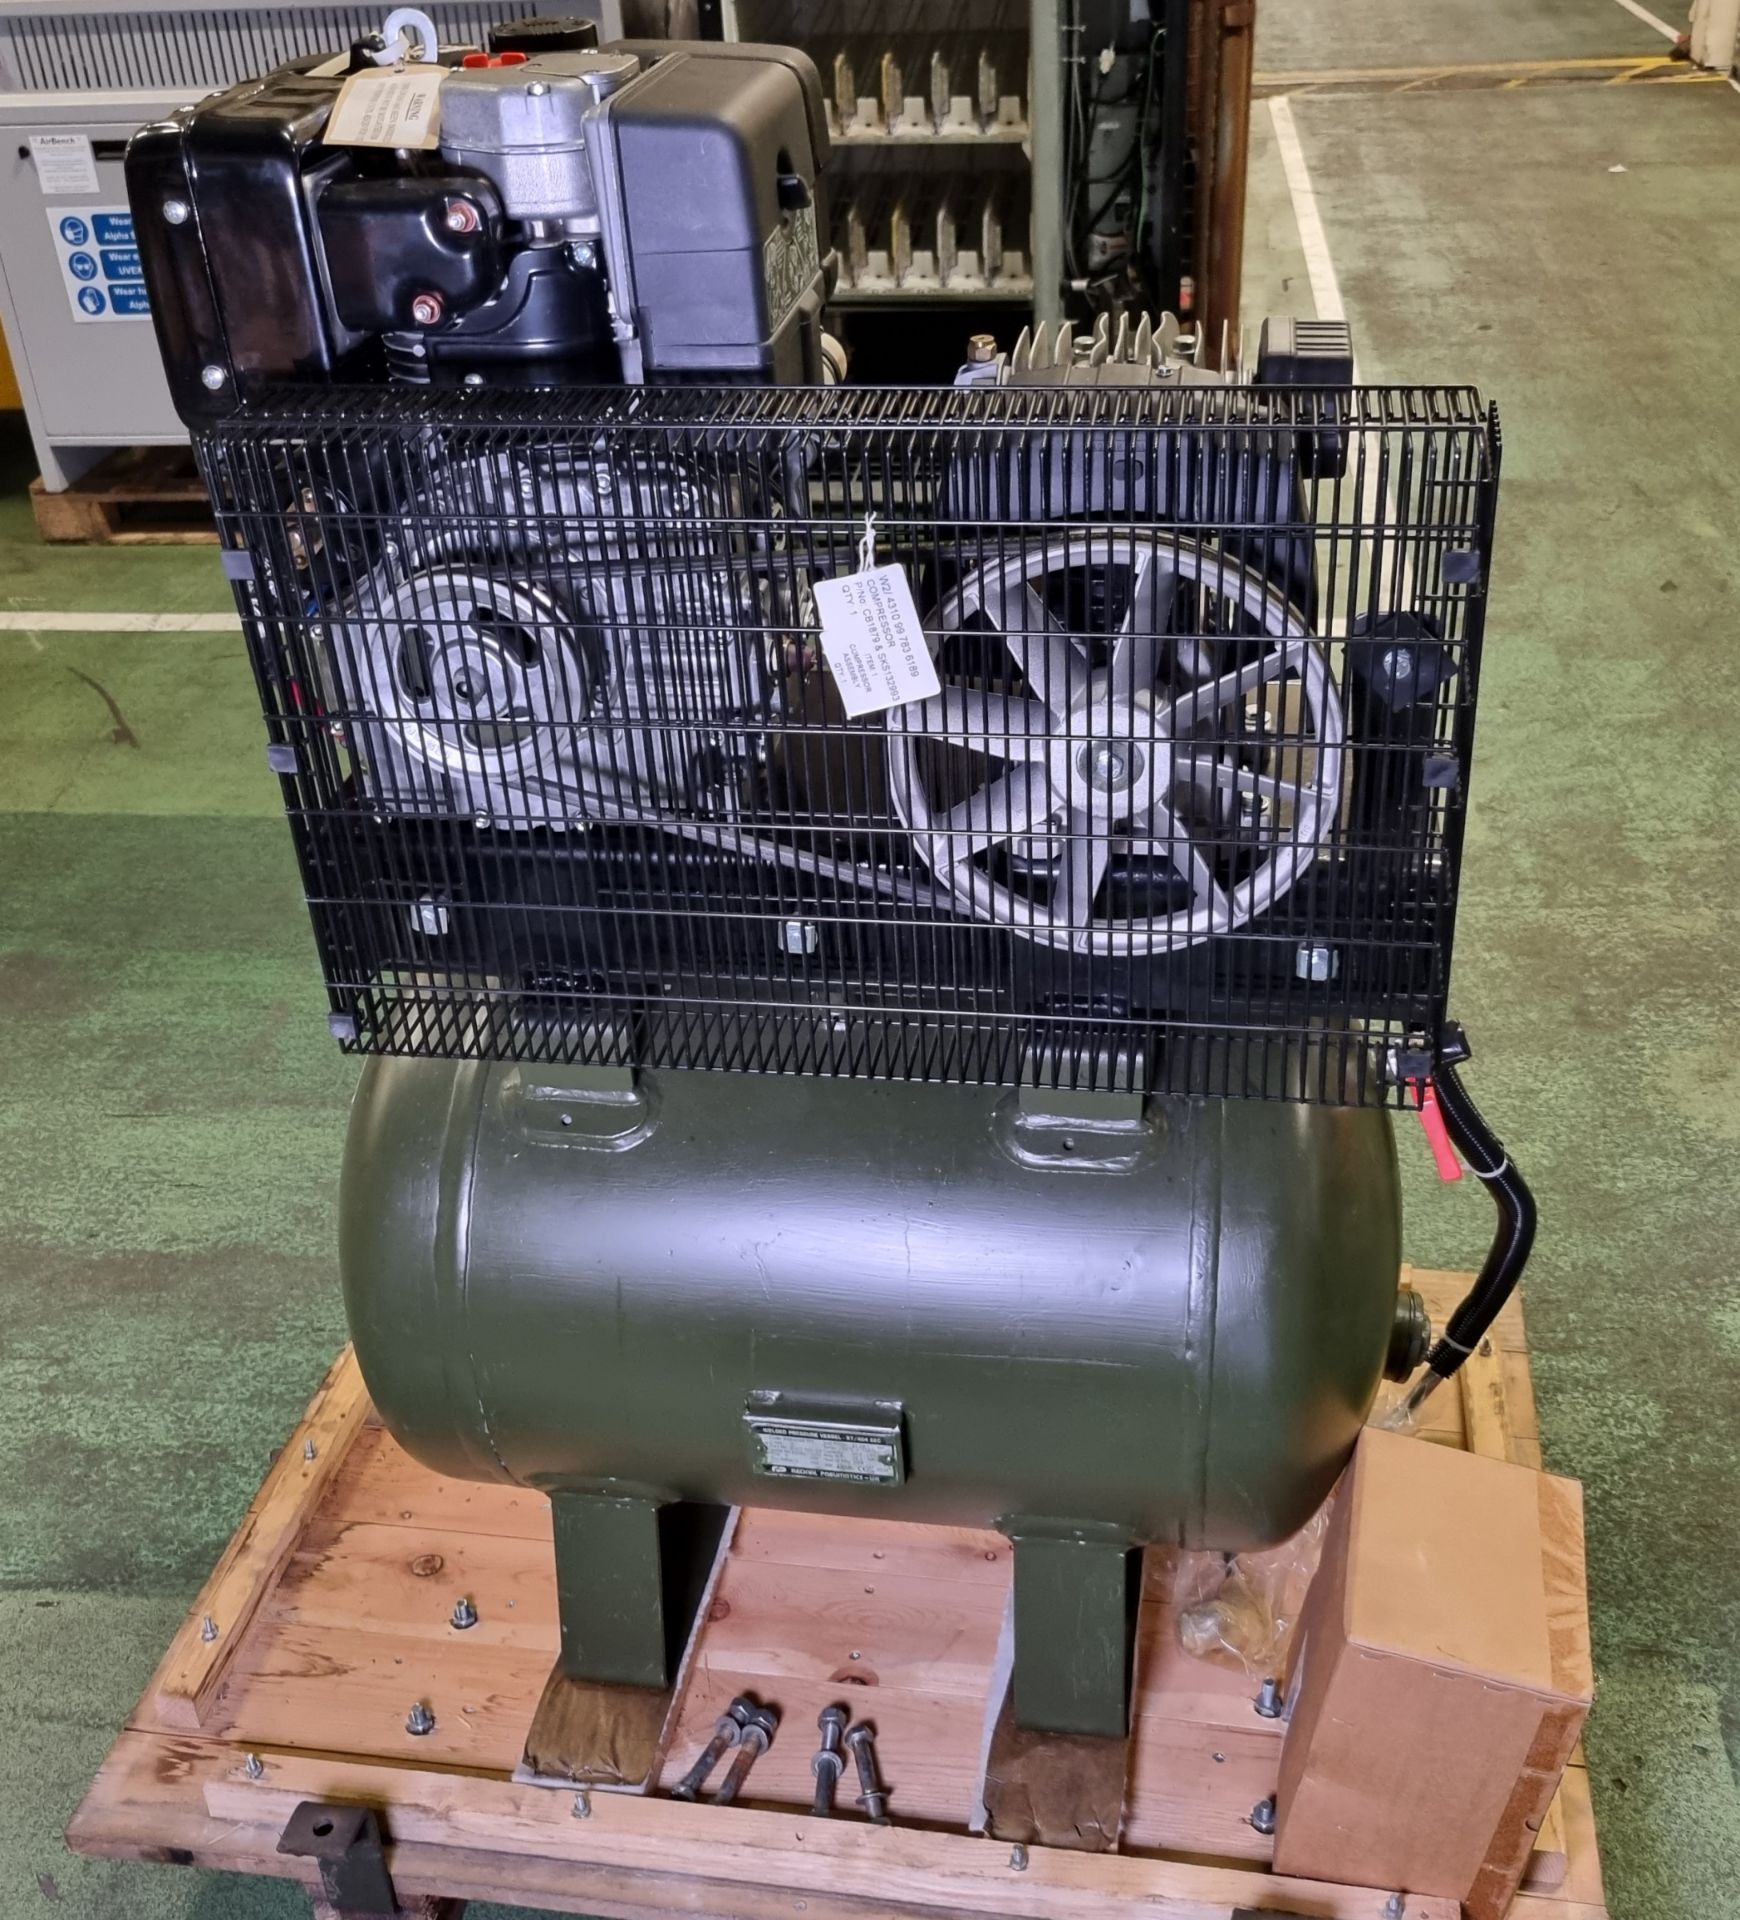 Diesel powered workshop compressor - Lombardini 15 LD 315 diesel engine - Serial No. 5352814 - Image 3 of 15